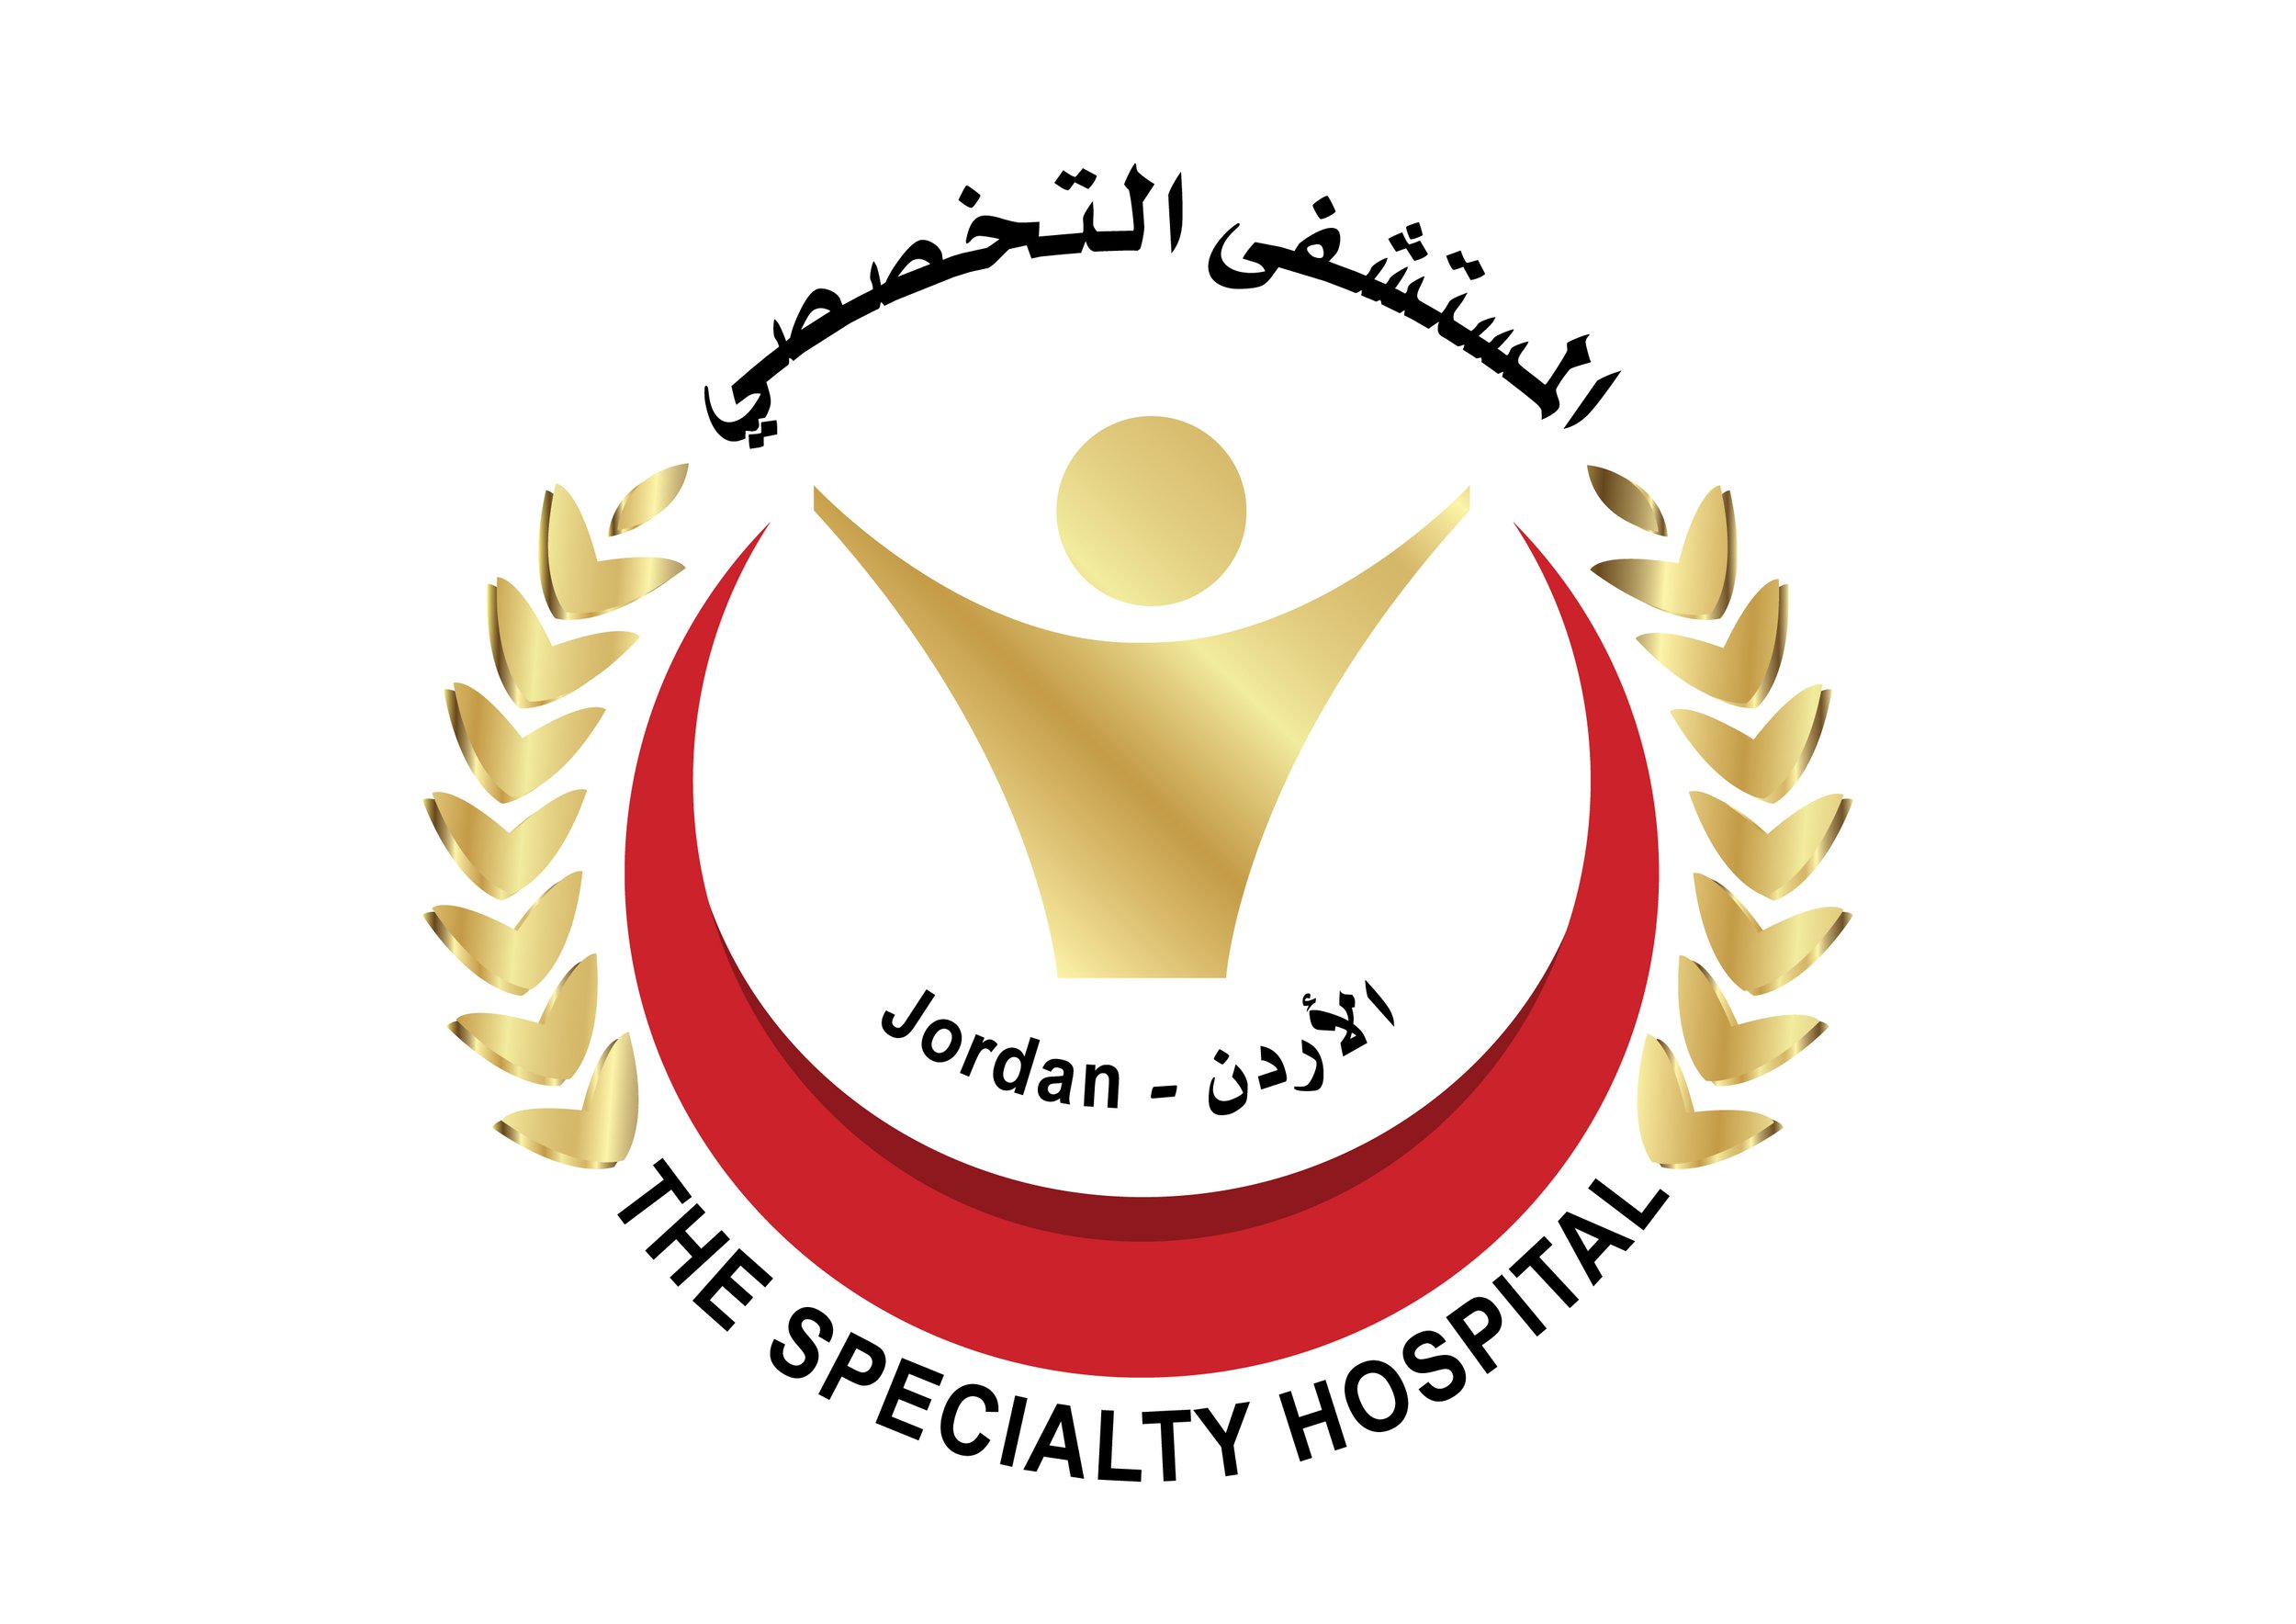 Specialty Hospital logo JPEG format.jpg